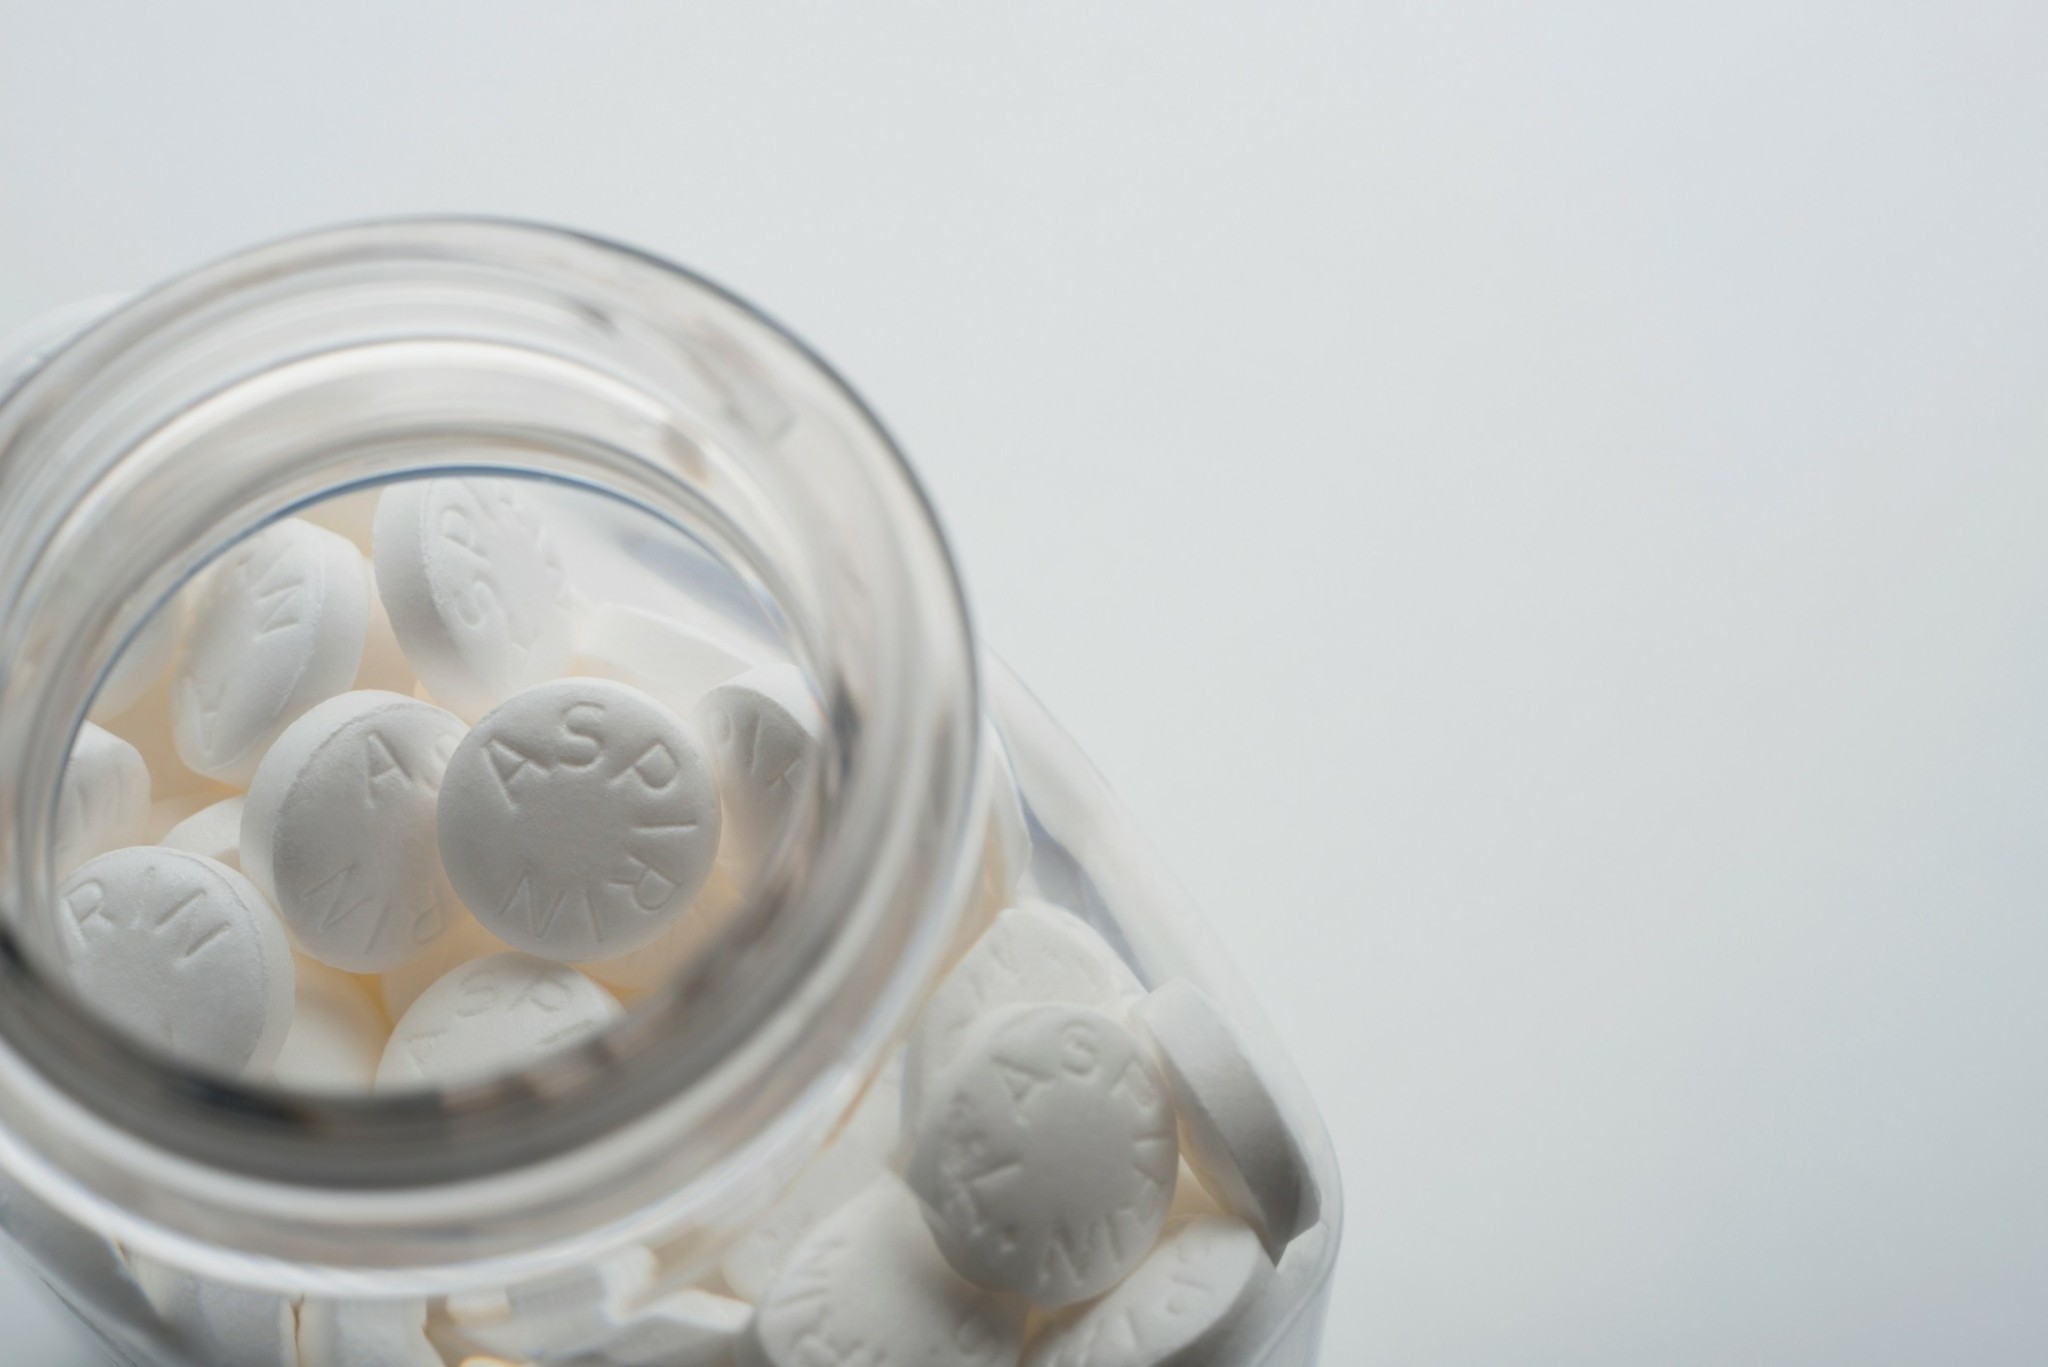 Ασπιρίνη: Γιατί η δράση της ξαναμπαίνει στο μικροσκόπιο; – Οφέλη και κίνδυνοι του φαρμάκου των 11 δισεκατομμυρίων δισκίων ετησίως